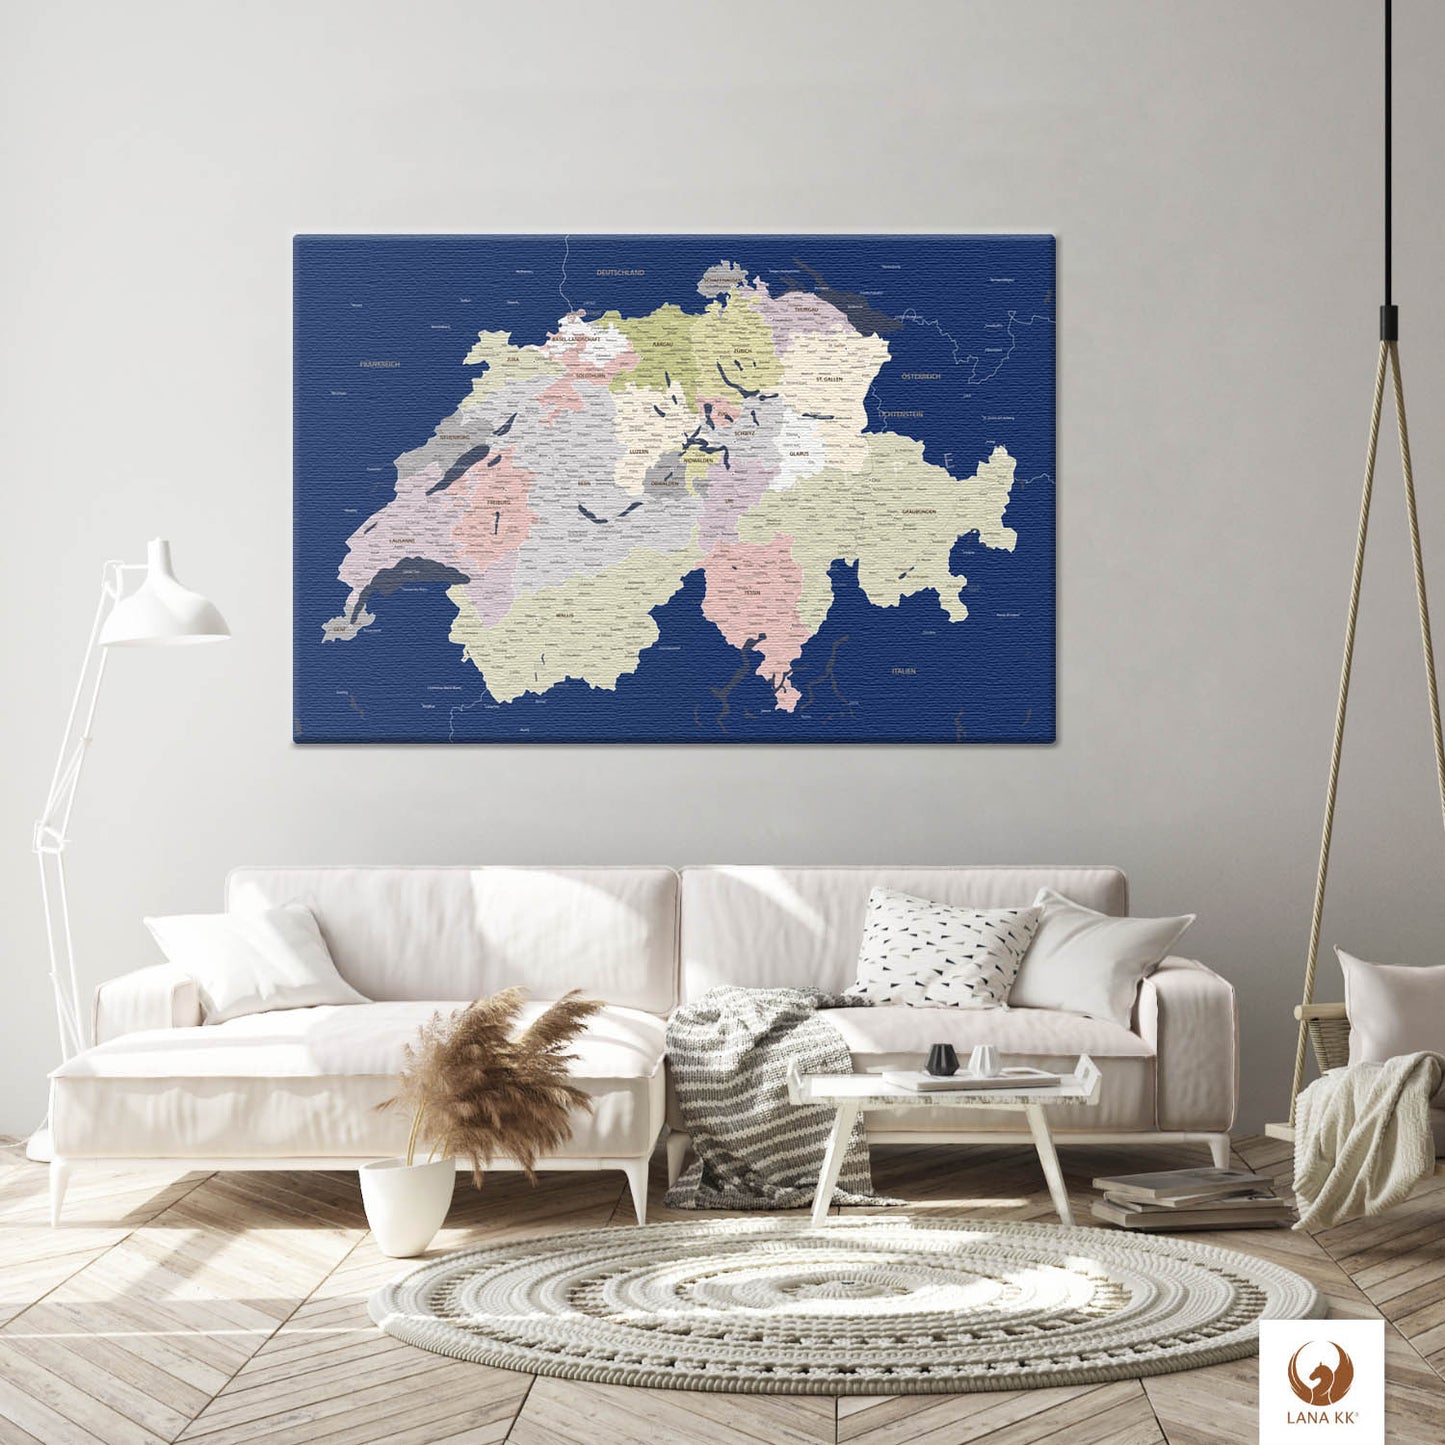 Die Welt als Zentrum Deiner Wohnung. Deine Schweizkarte Blau für sich mit ihren ausgewogenen Farben ideal in Dein Wohnkonzept ein.